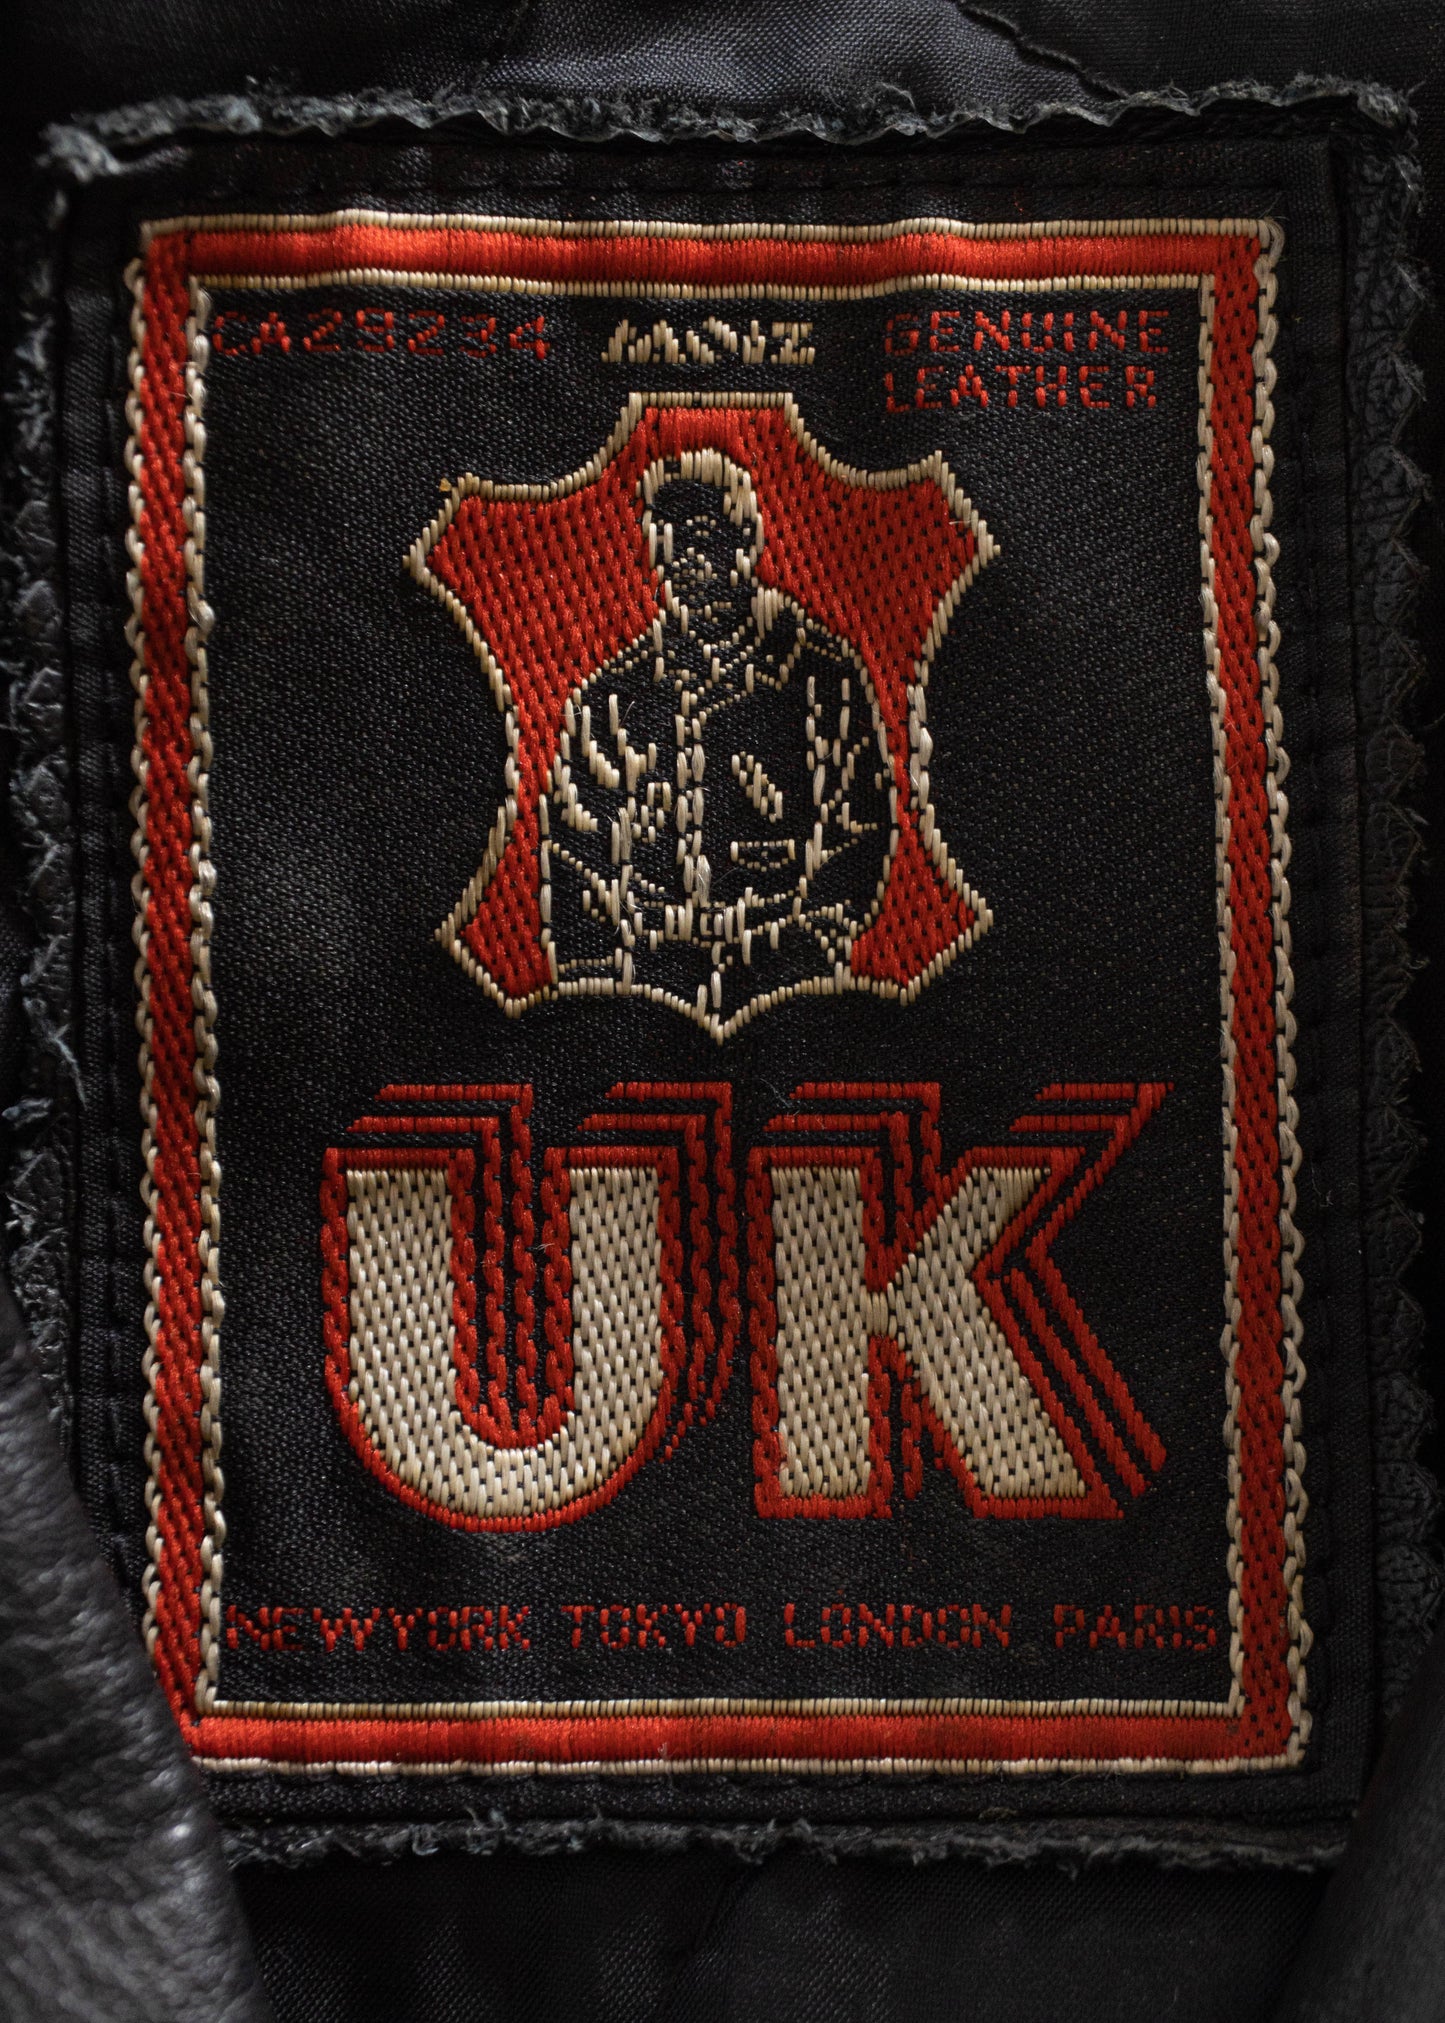 1980s UK Leather Moto Jacket Size S/M